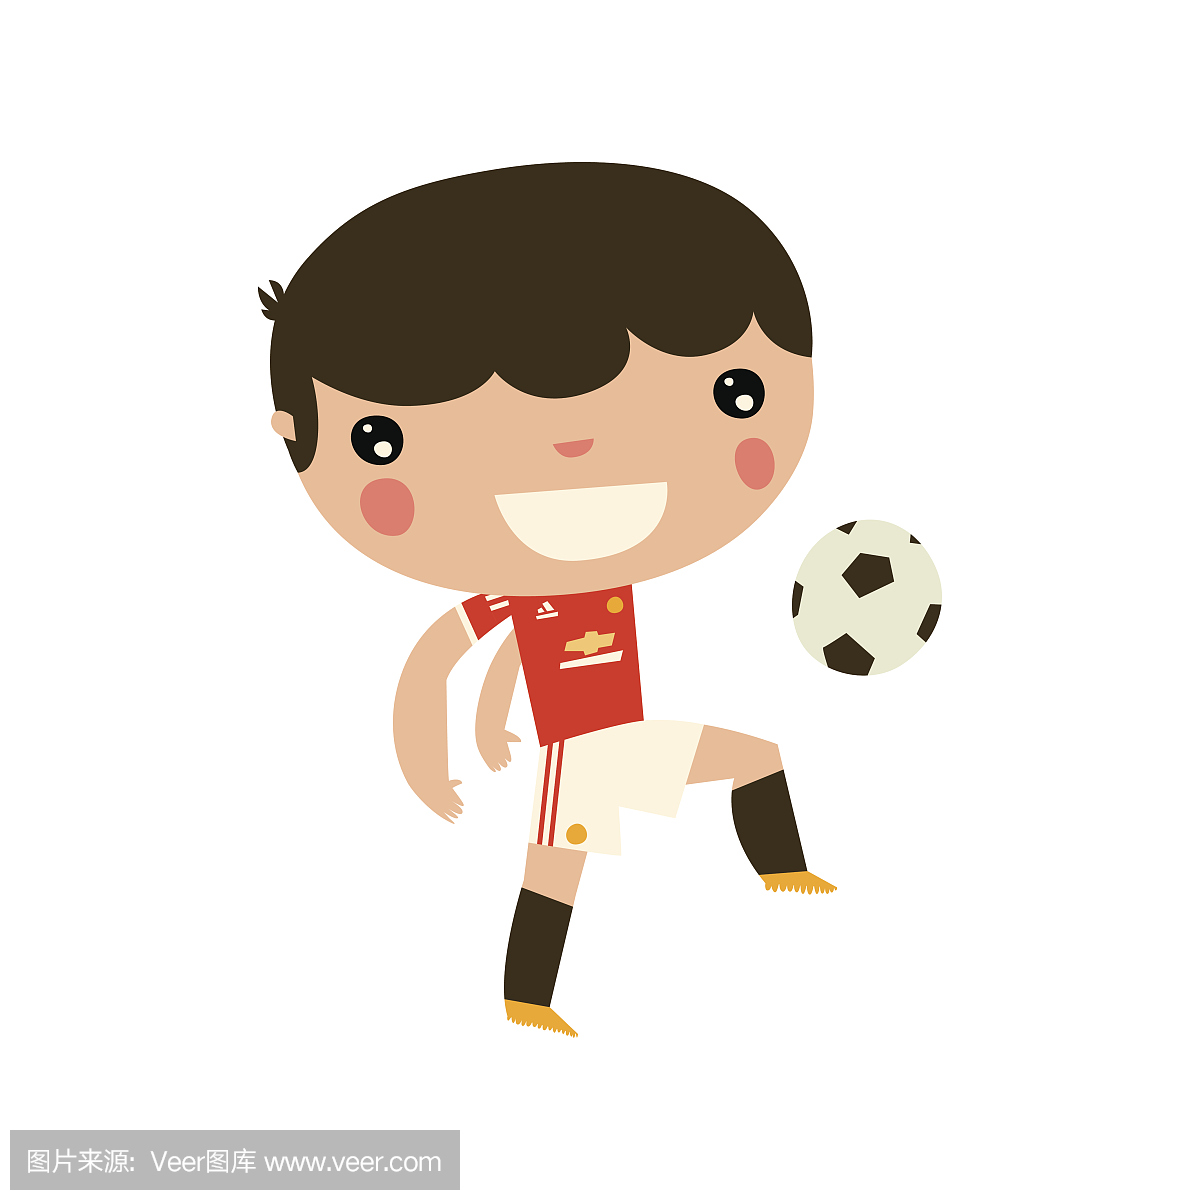 足球运动员男孩。英文套装颜色